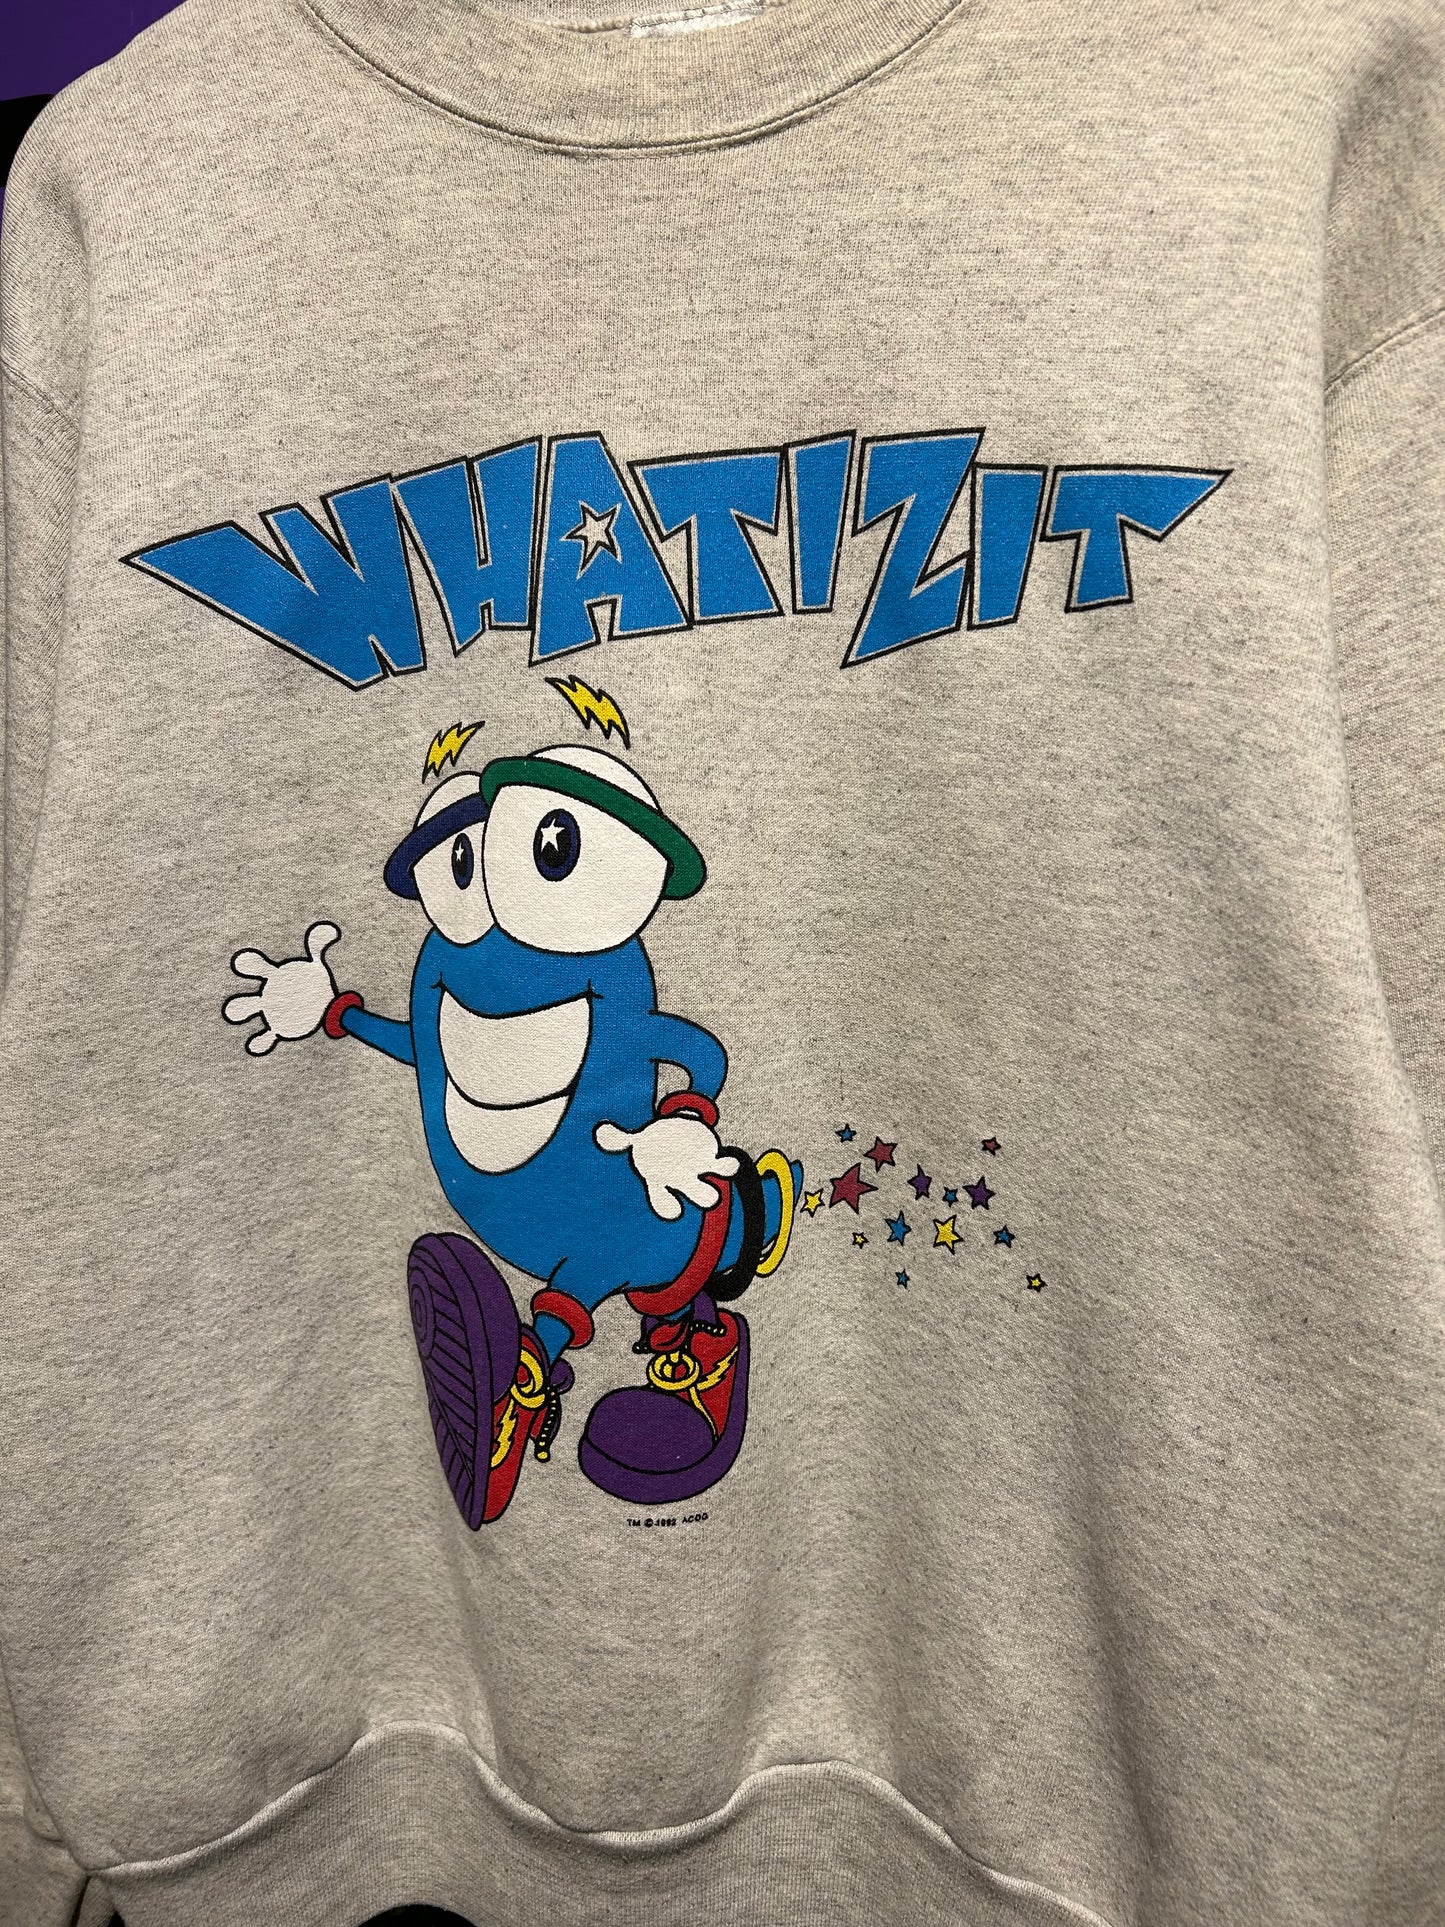 1996 Atlanta Olympics Mascot ‘WhatIzIt’ Crewneck. Size Large